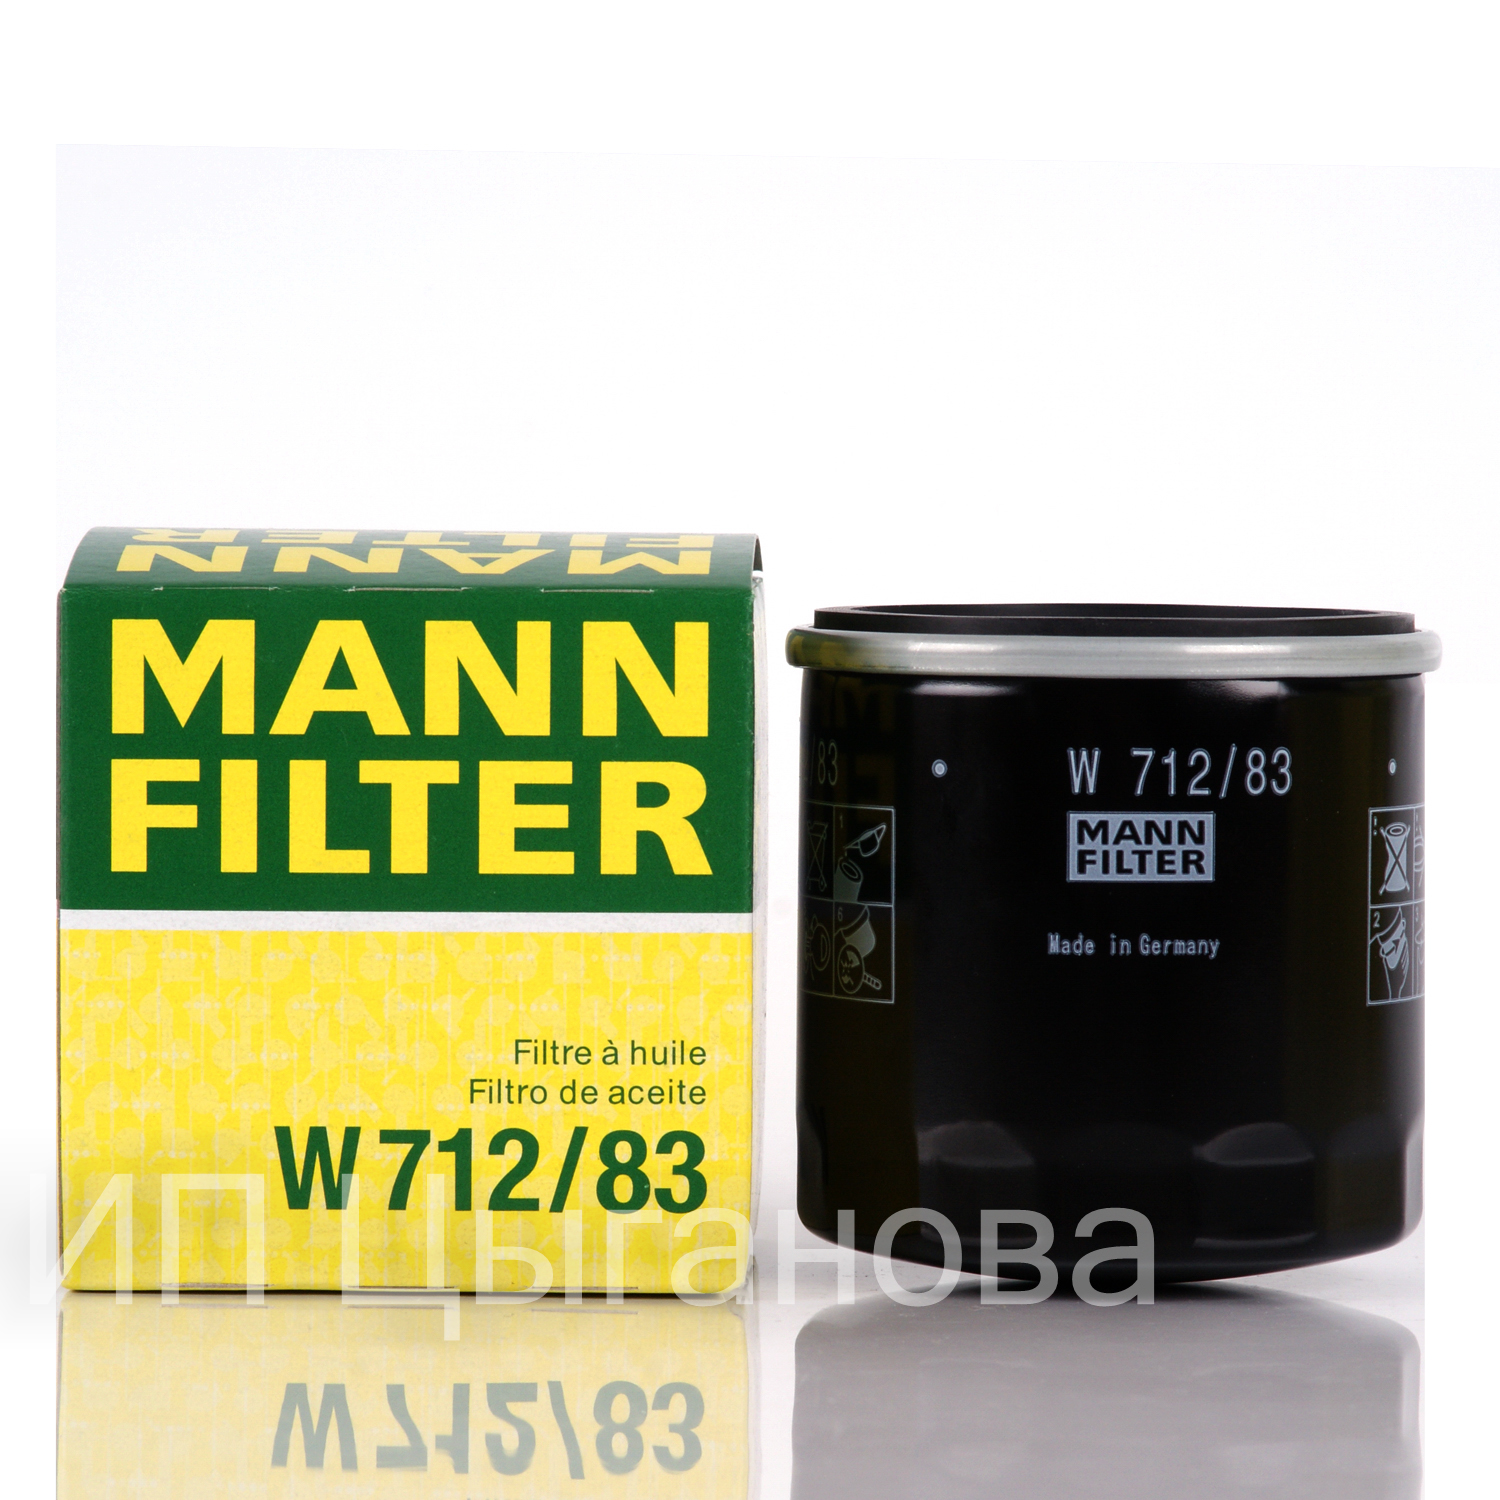 MANN FILTER   . W712/83